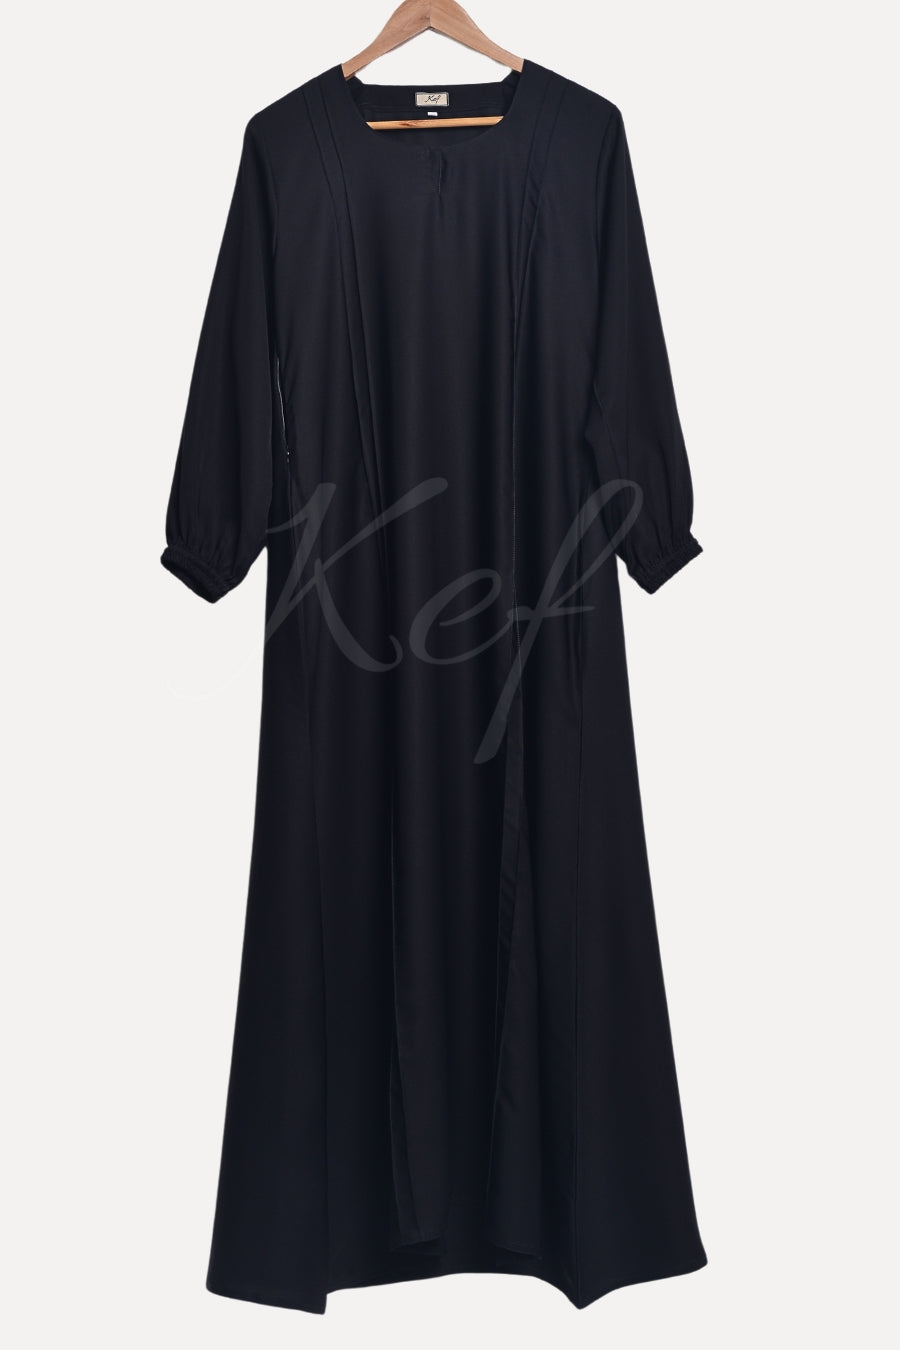 Black Scruche Sleeves New Abaya